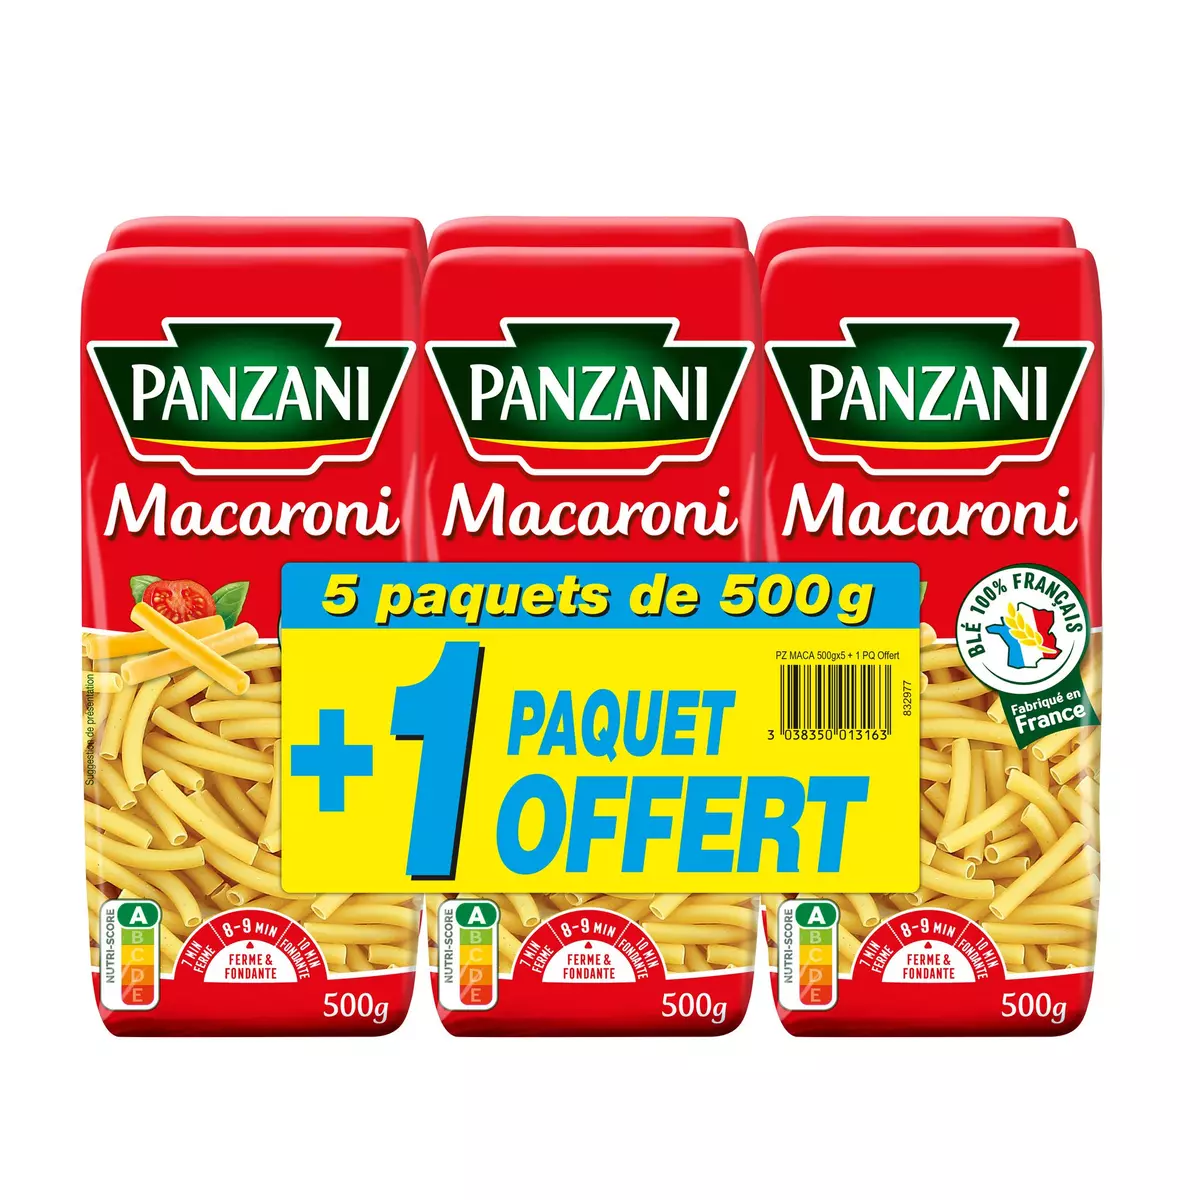 PANZANI Macaroni 5x500g +1offert 3kg